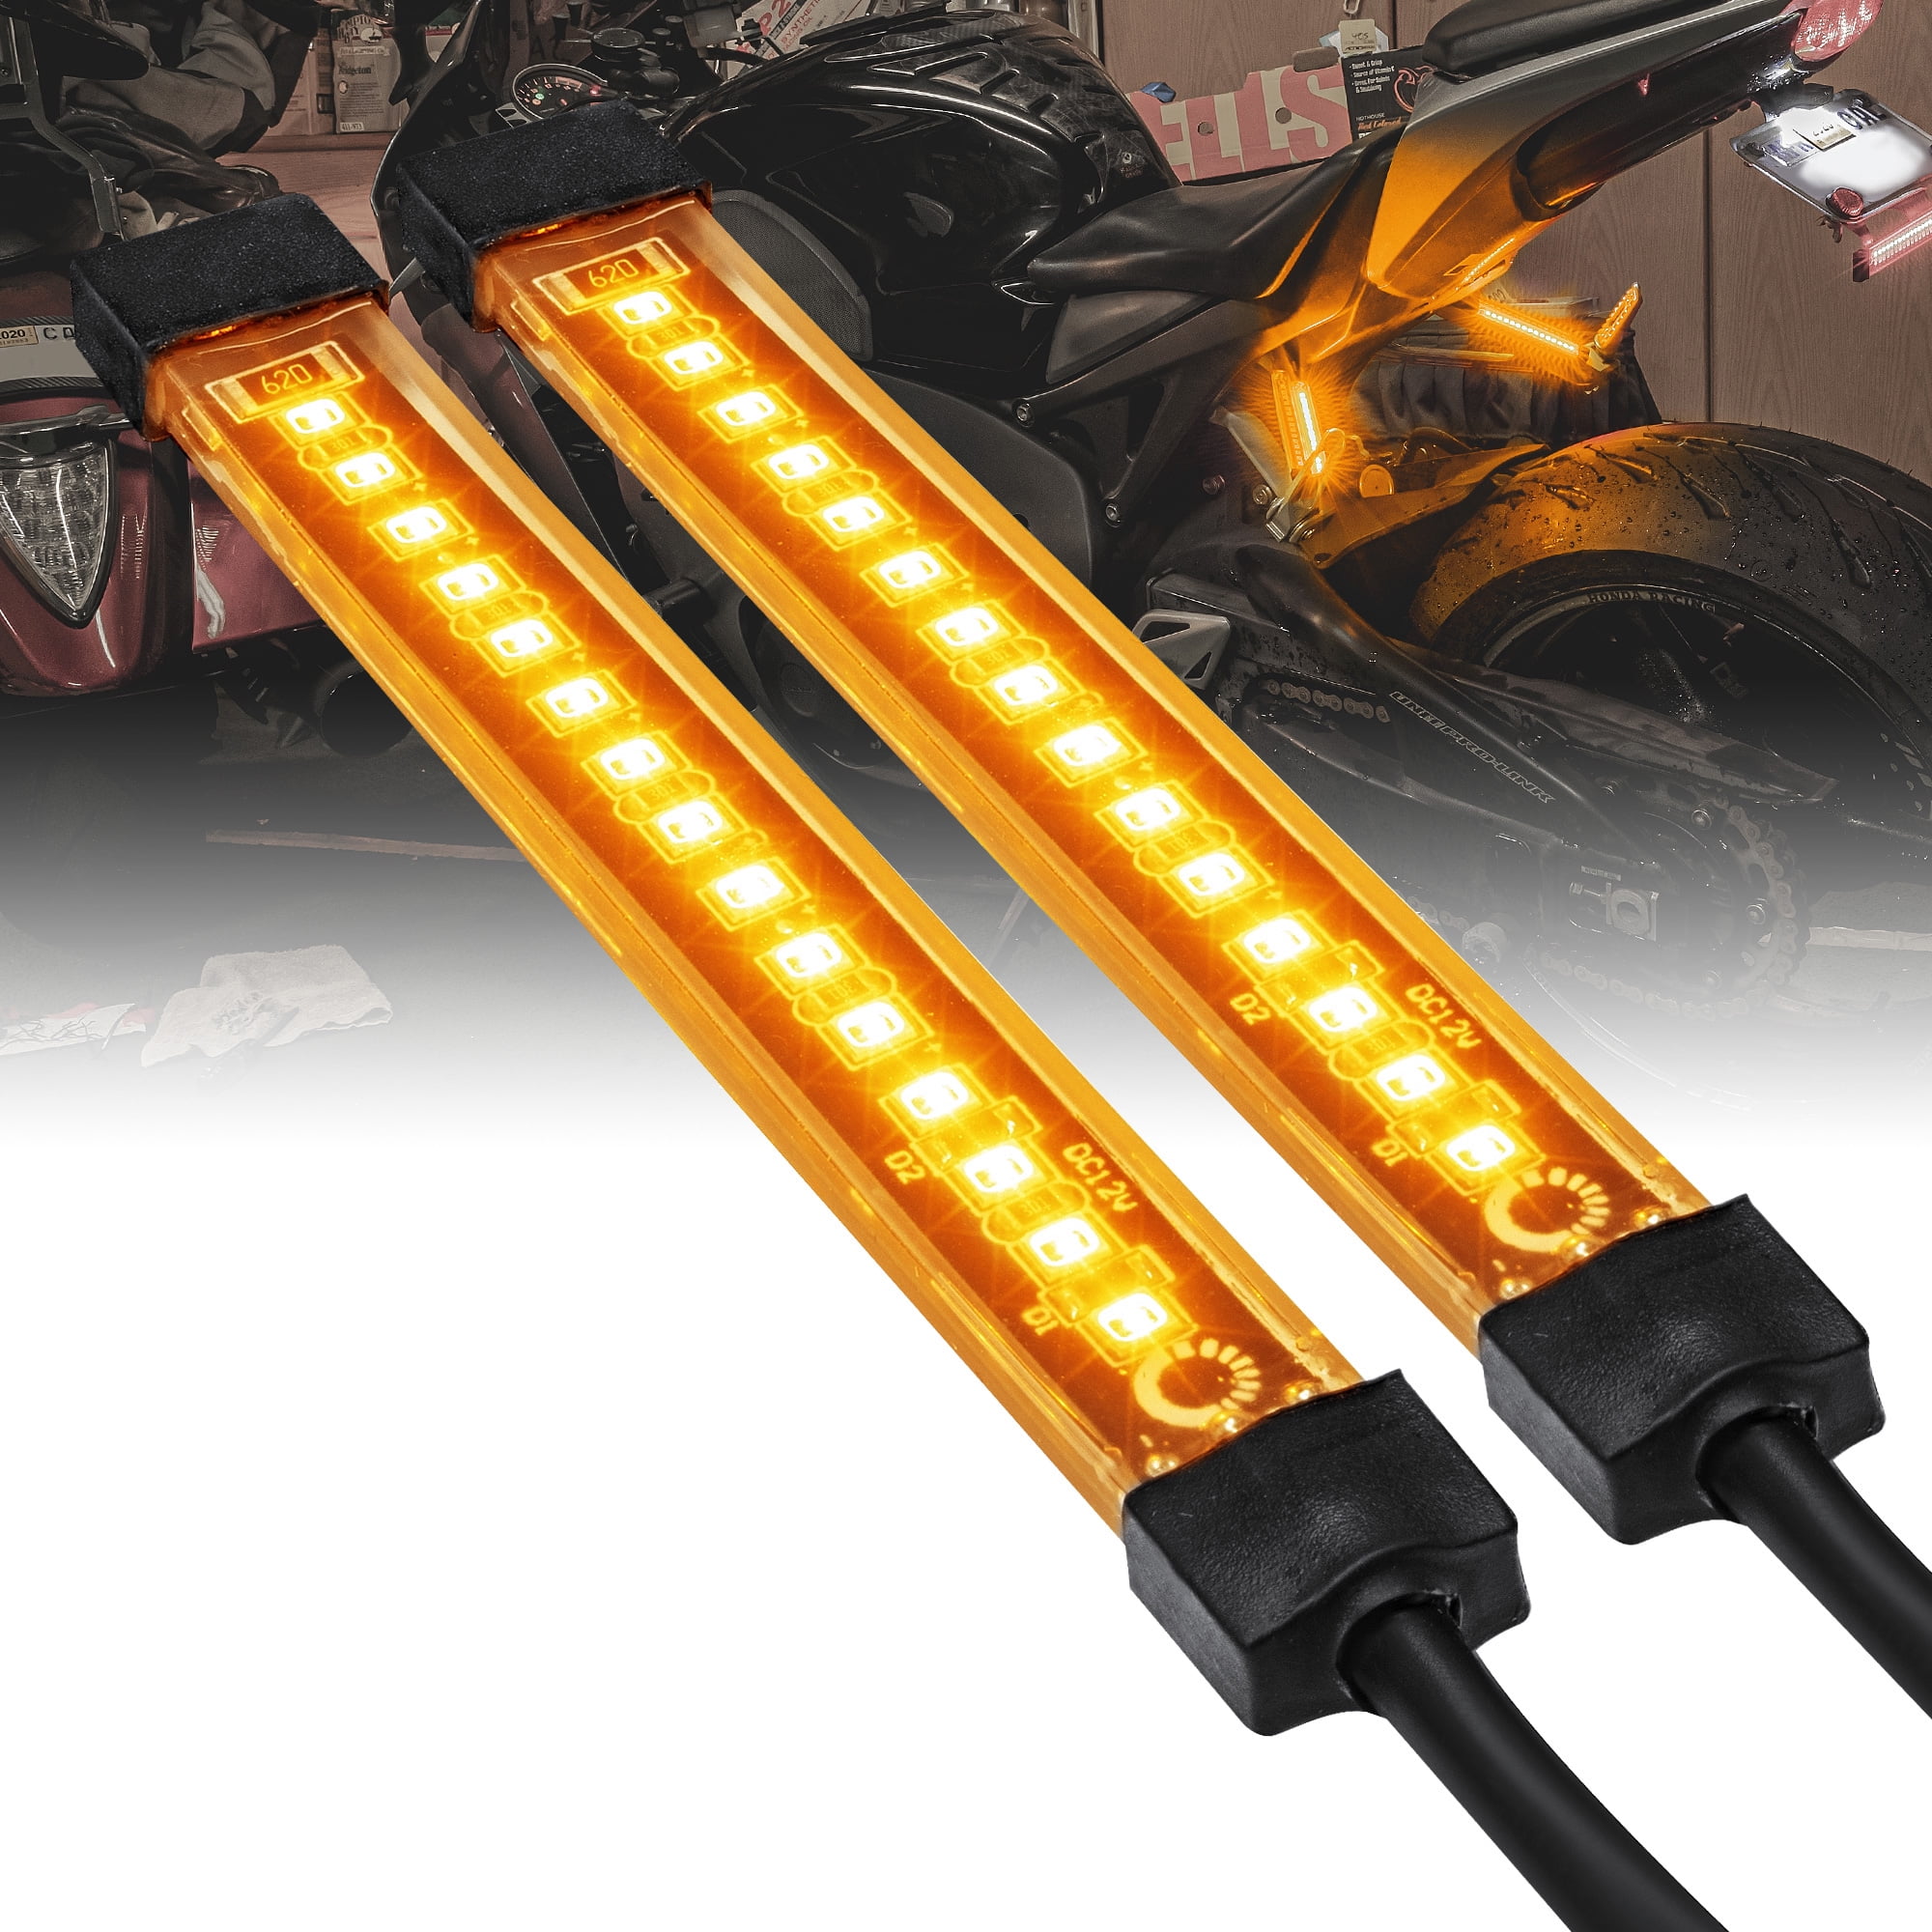 2x 10cm 24led pvc strip Universal Motorcycle Bike Amber LED Turn Signal Indicator Blinker Light 12v